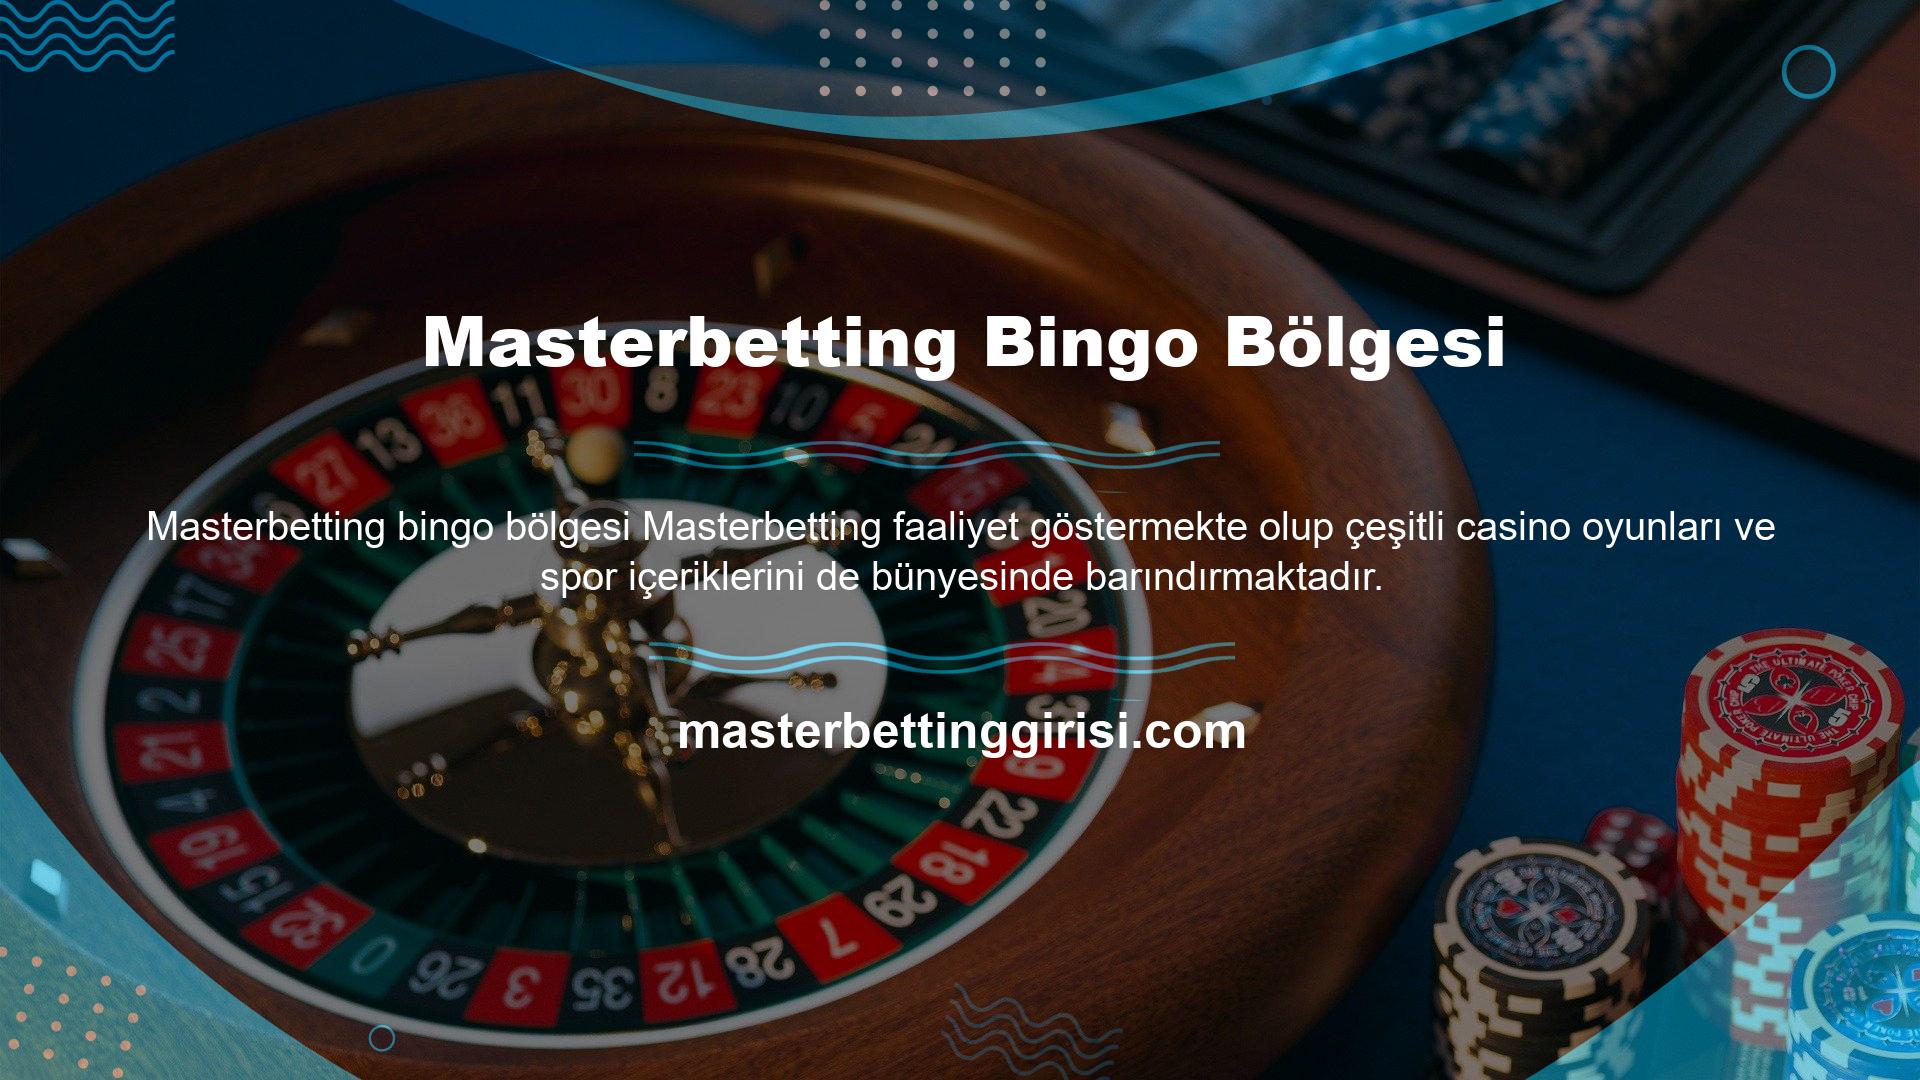 Masterbetting bingo alanı, canlı bingo oyunları oynayabileceğiniz son teknoloji bir altyapıya sahiptir